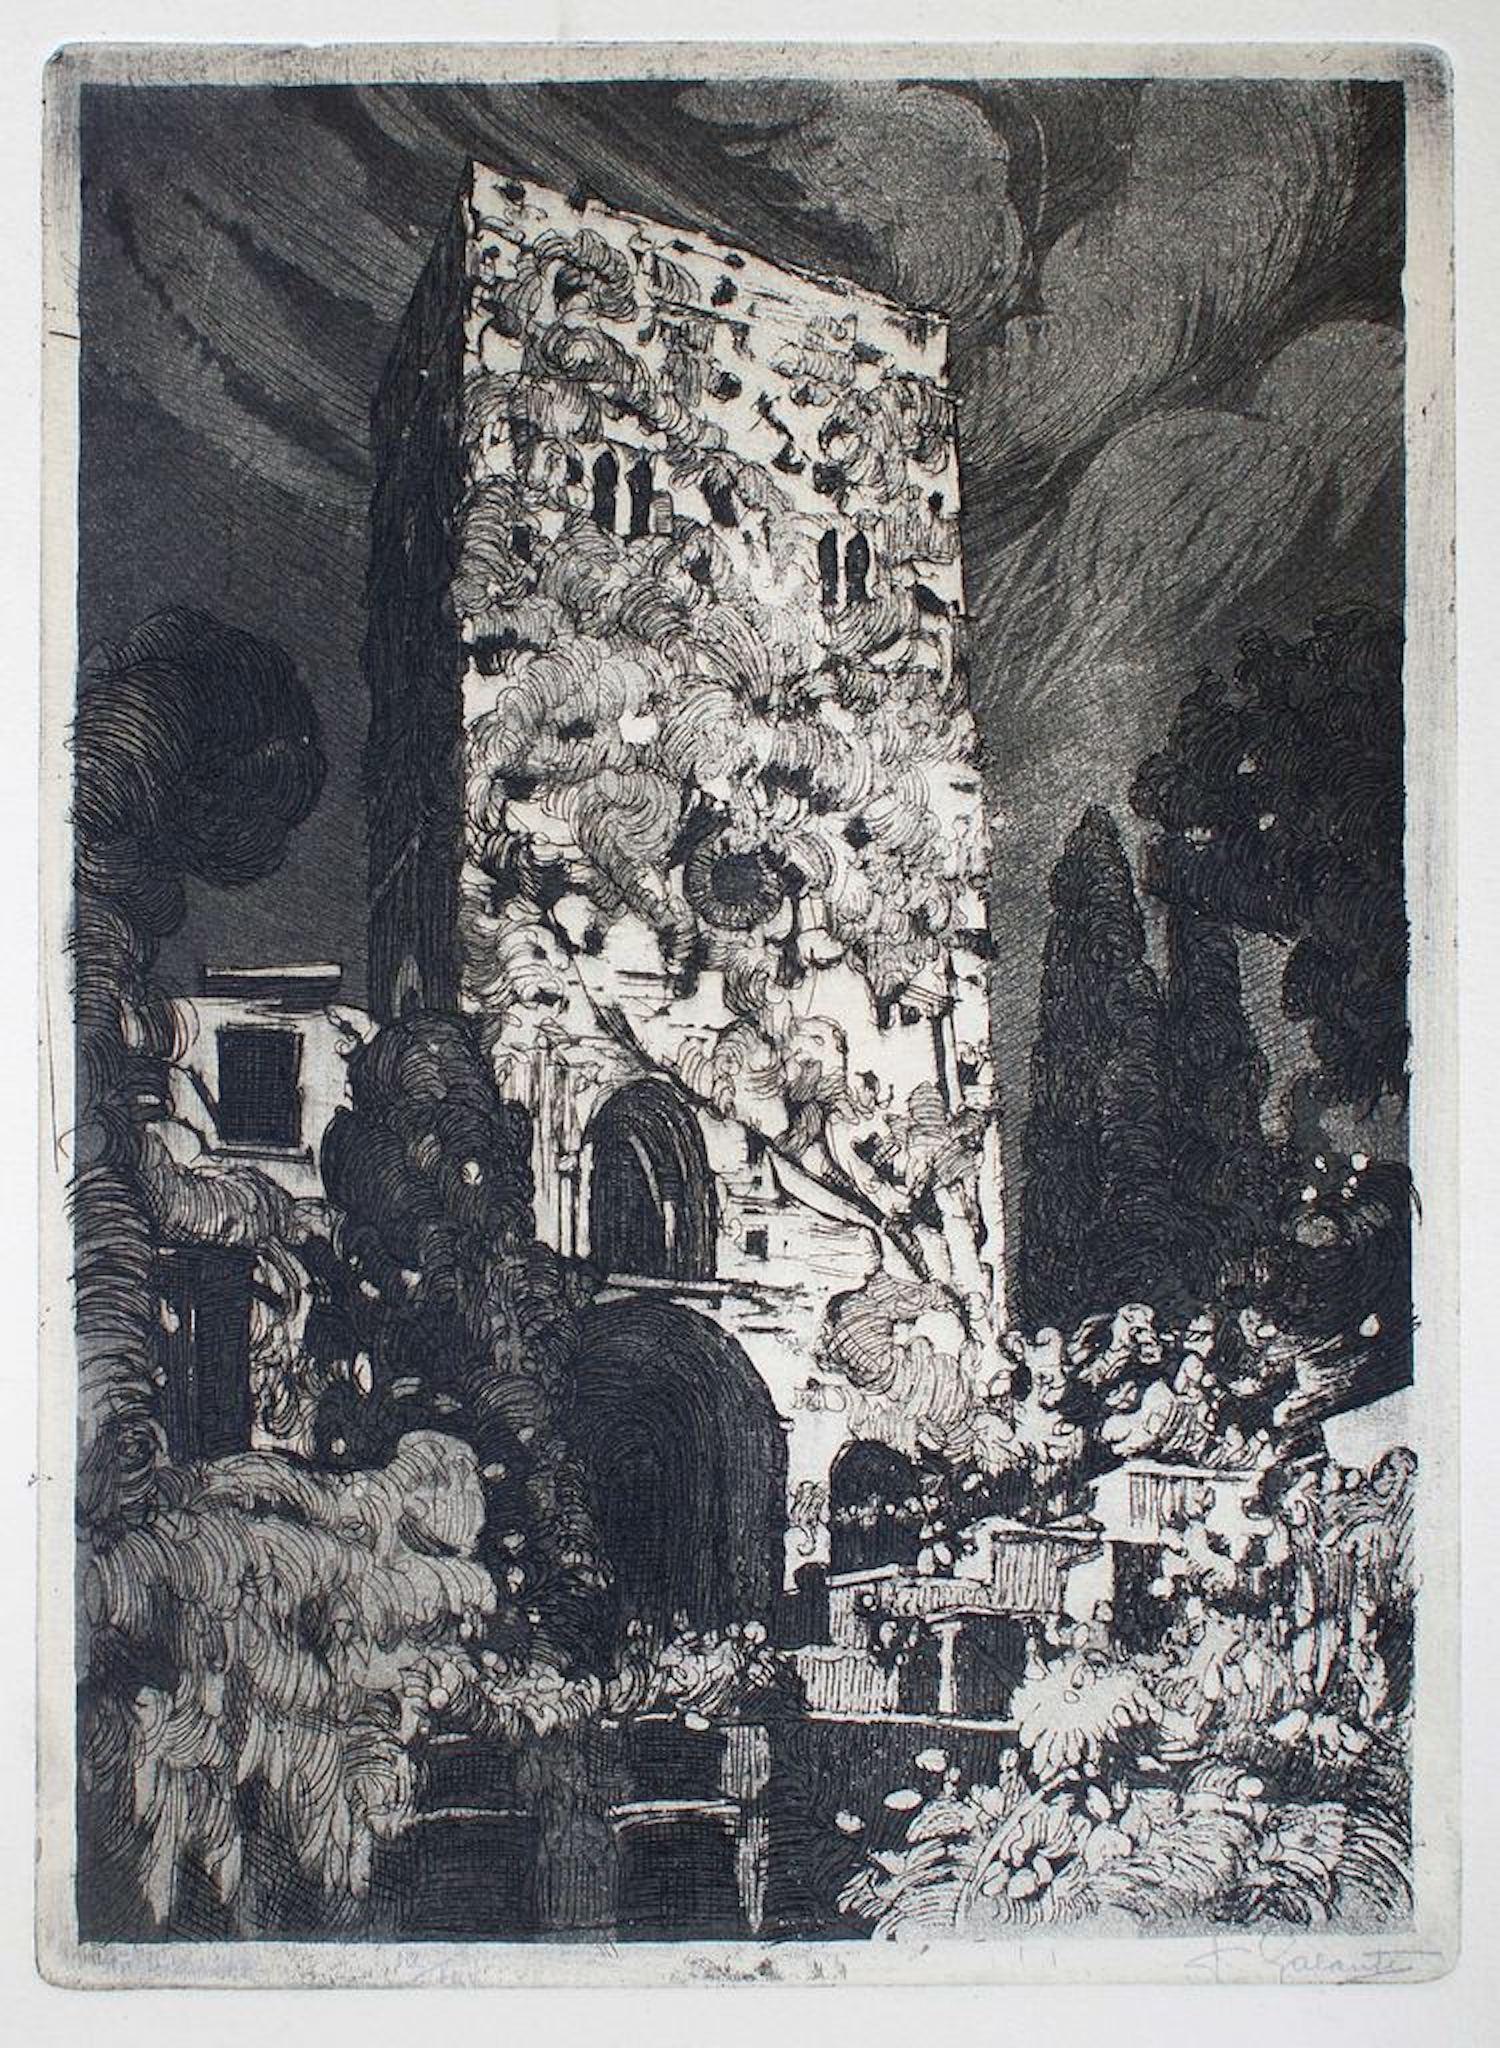 Faszinierende Ansicht von Ravello (Amalfiküste) von Nicola Galante.
Es wurde in einer Auflage von 100 Exemplaren veröffentlicht und ist unten rechts vom Künstler handsigniert.

Dieses Kunstwerk wird aus Italien verschickt. Nach geltendem Recht ist